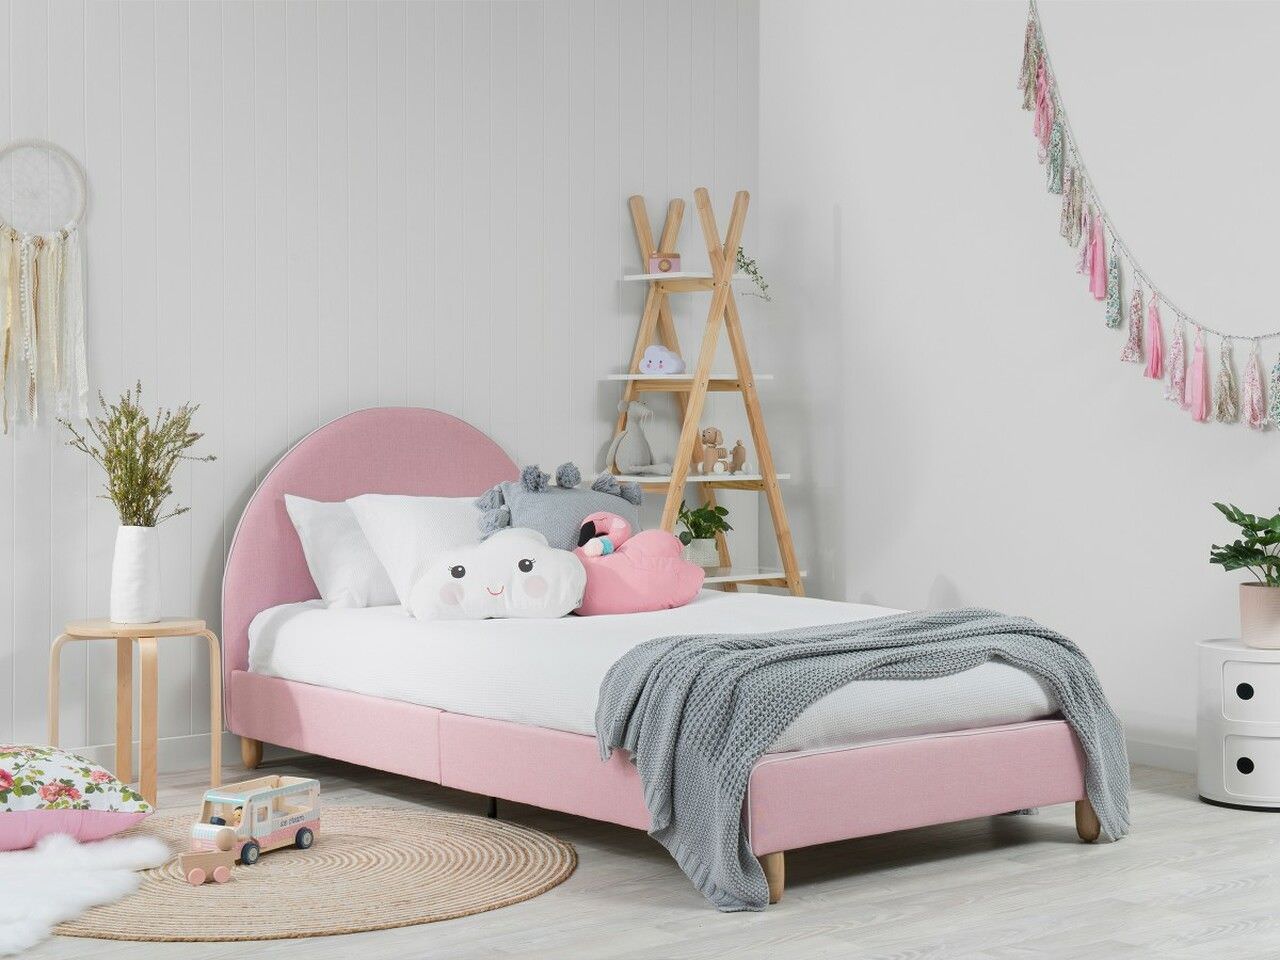 Giường đơn màu hồng thiết kế nhỏ gọn